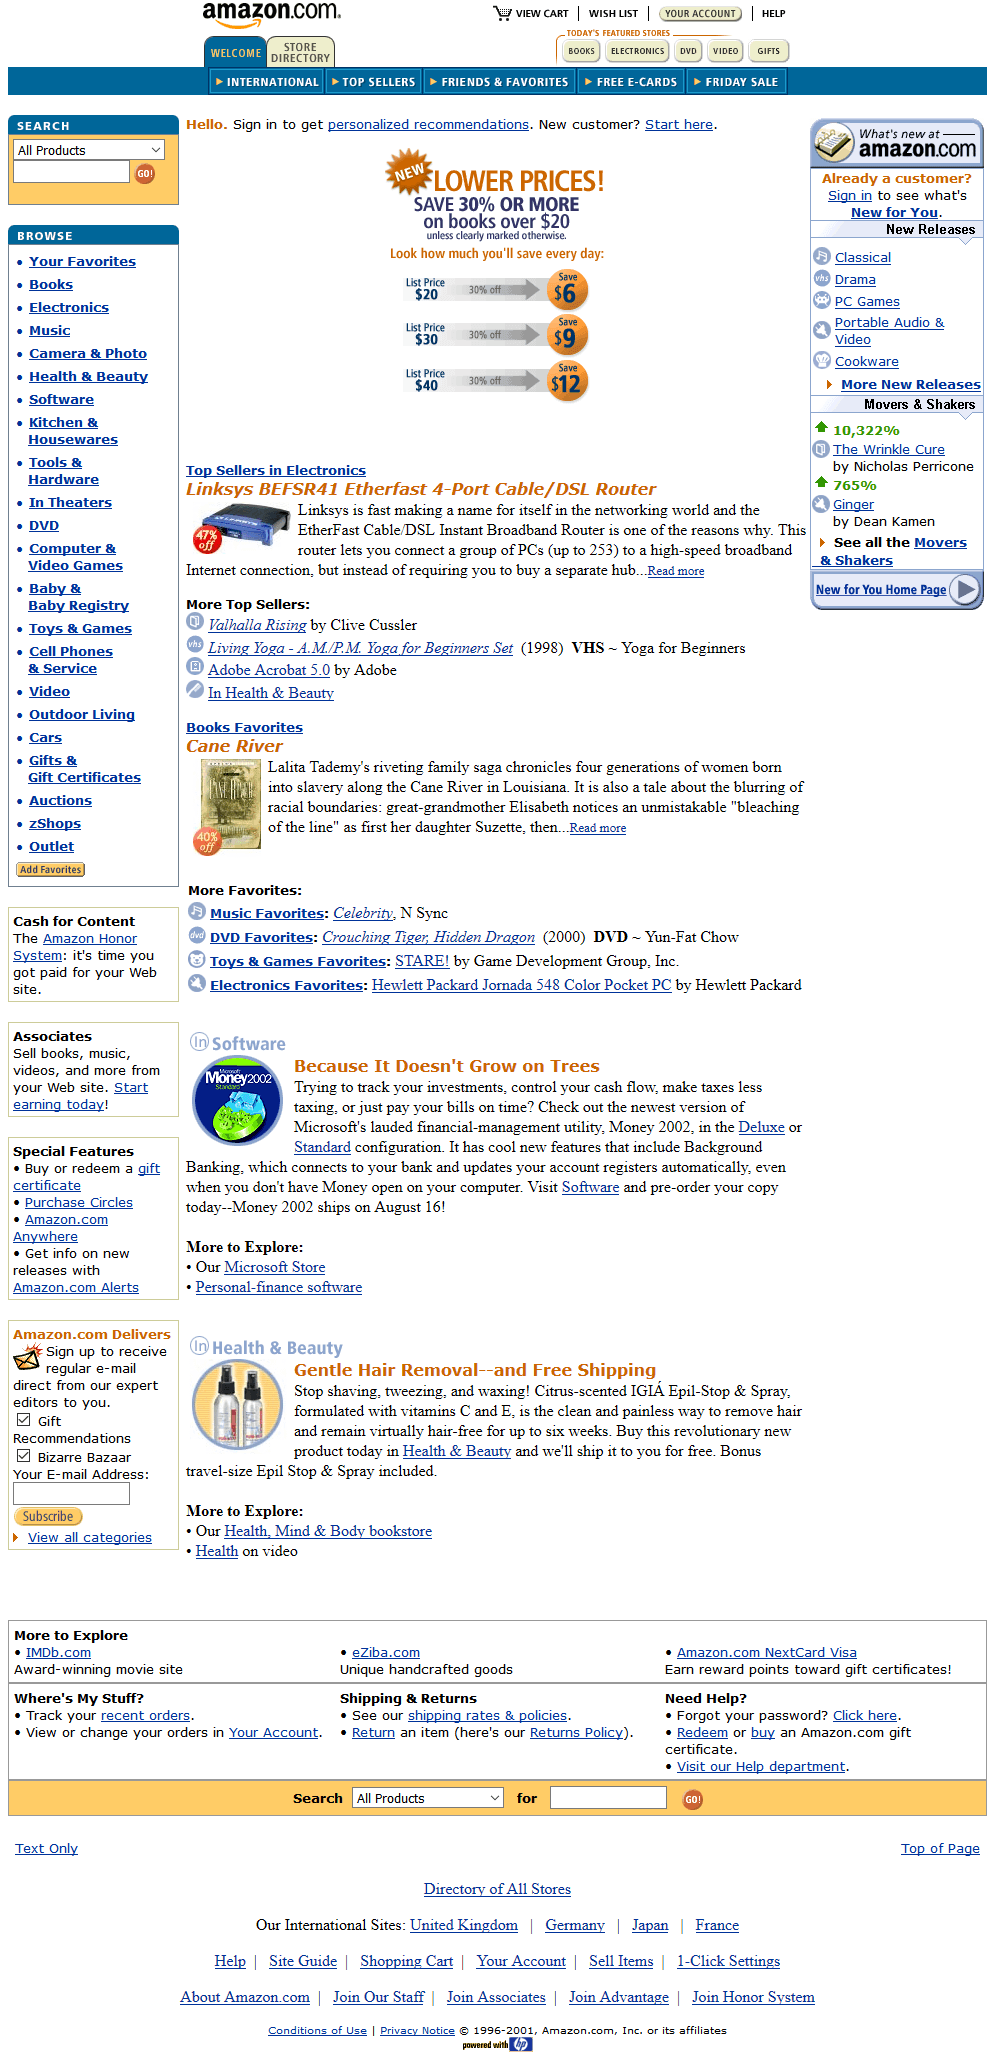 Amazon website in 2001